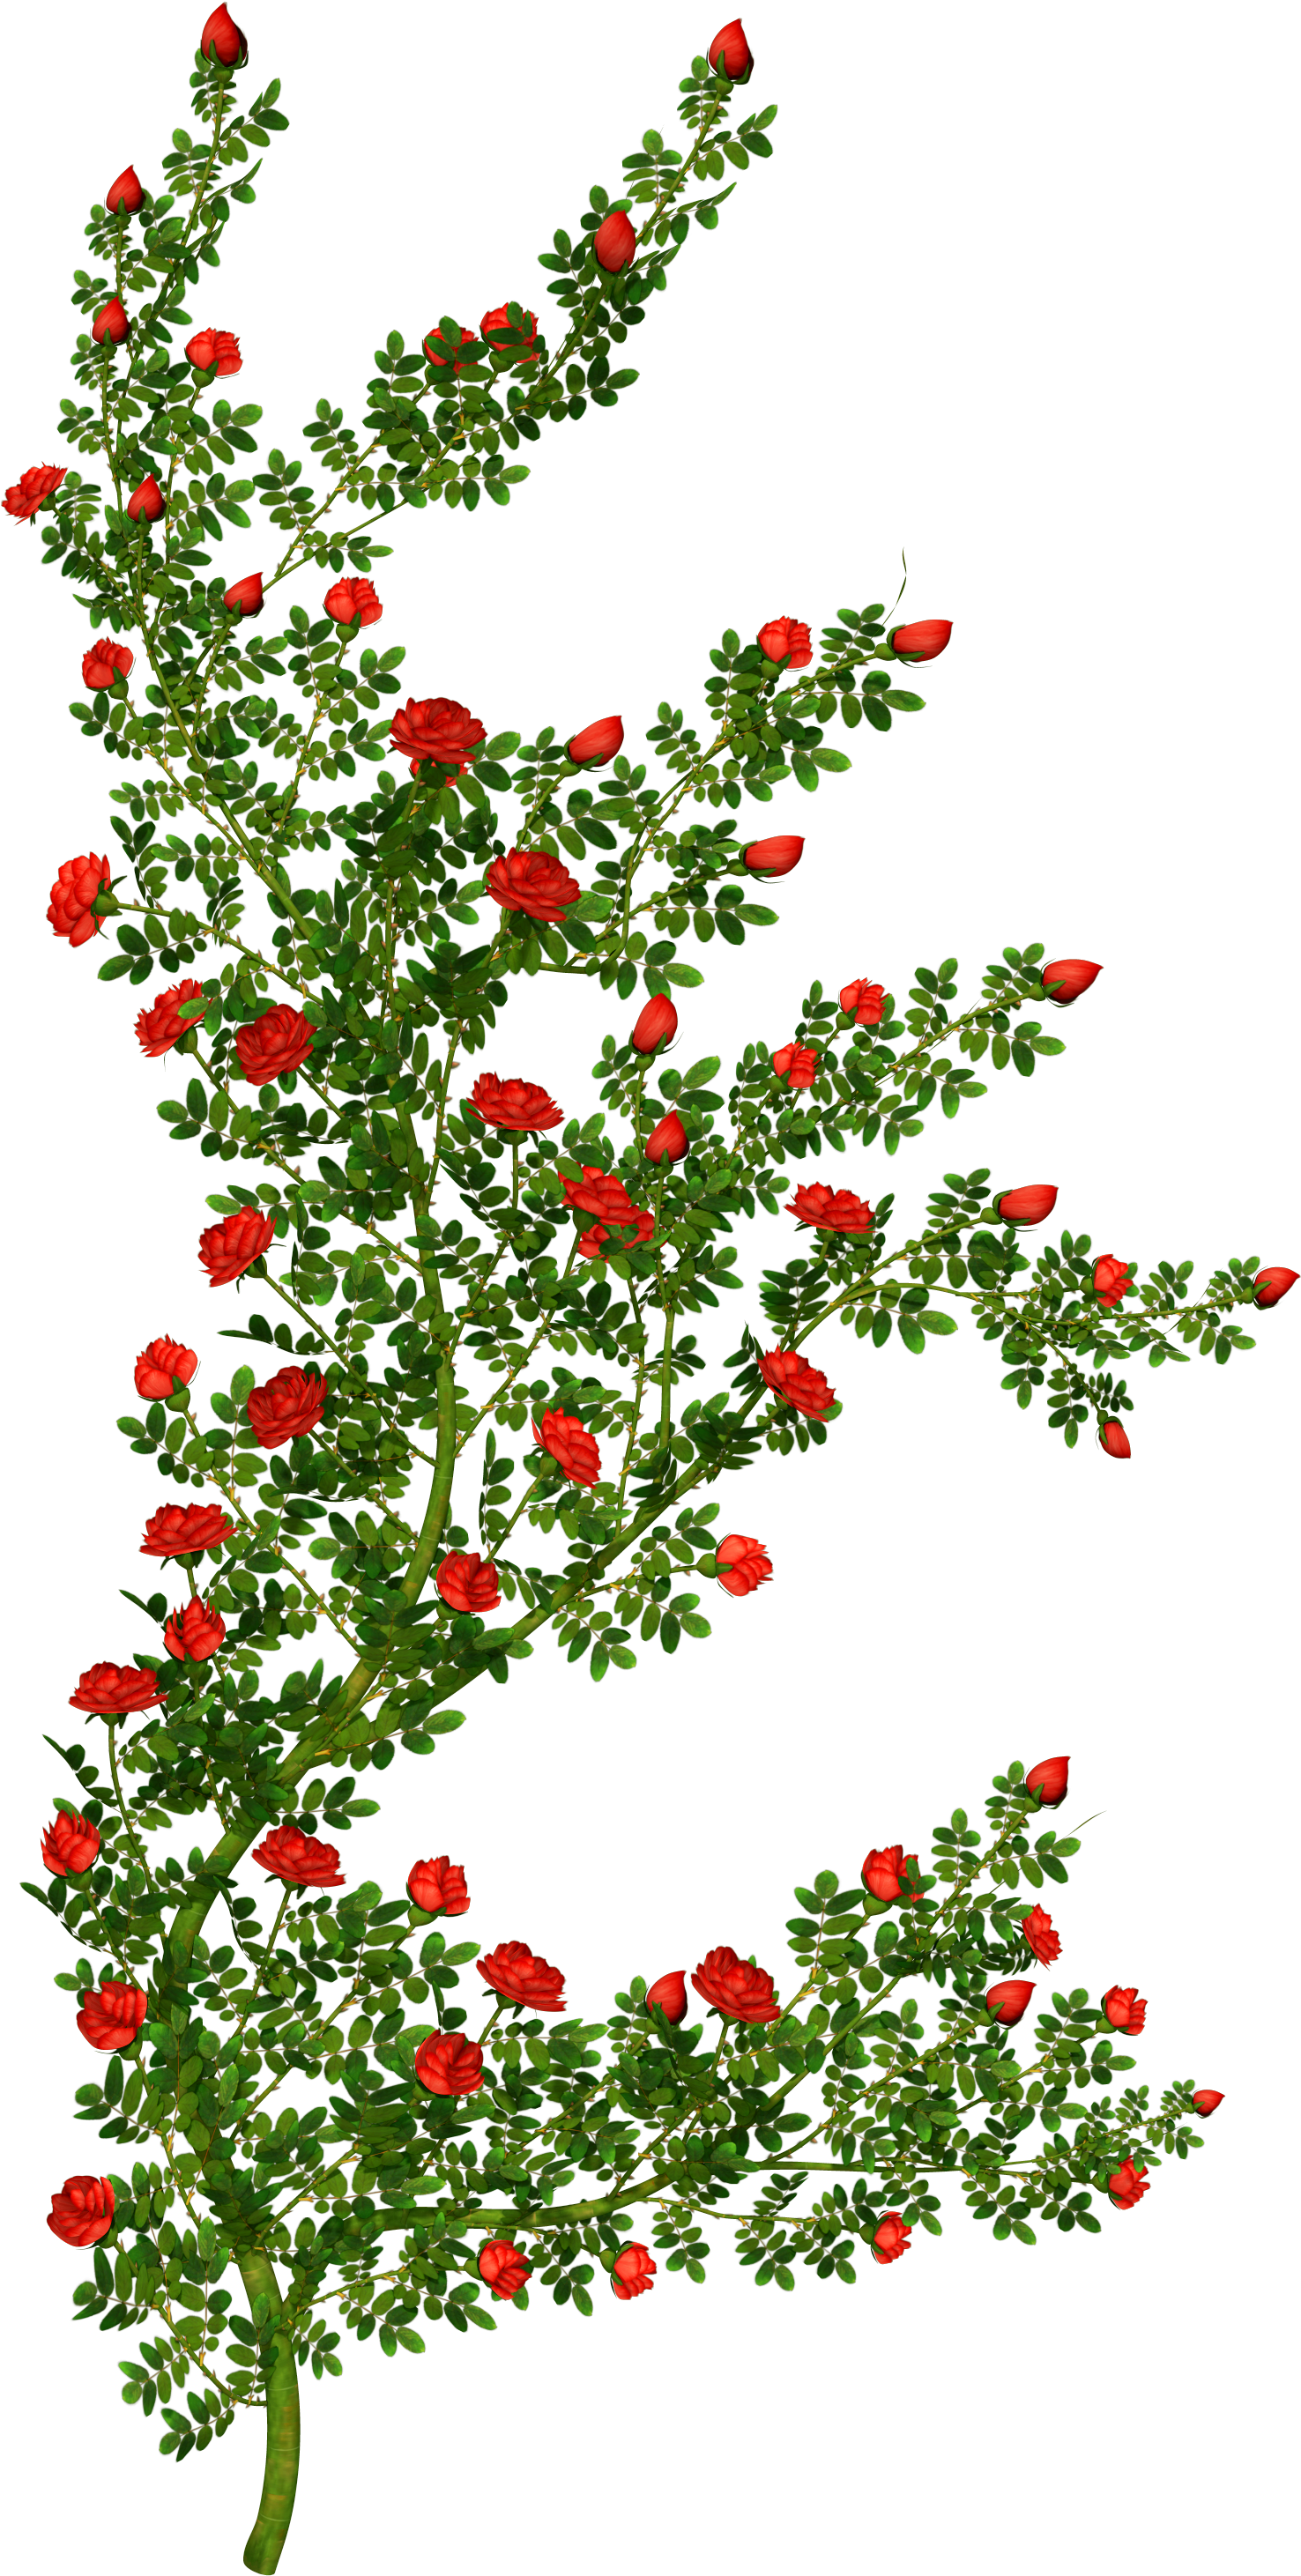 Rose Bush Clipart - Rose Bush Clipart Transparent (1852x3040)